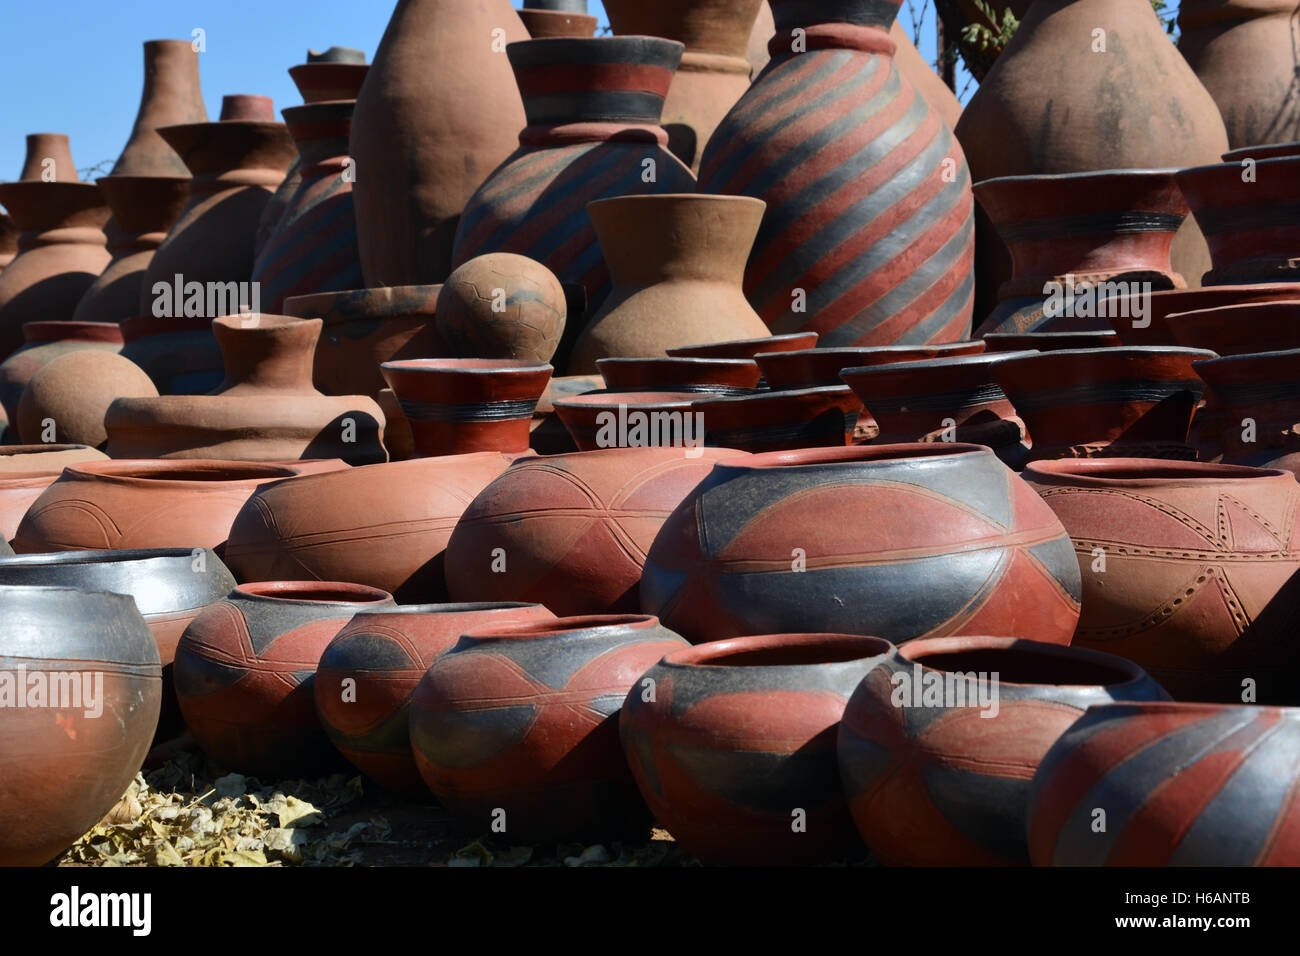 Tontöpfe in der Mukondeni Keramikfabrik hergestellt sind erhältlich für den Verkauf an die Einheimischen und Touristen in der Region Norden Limpopo in Südafrika. Stockfoto